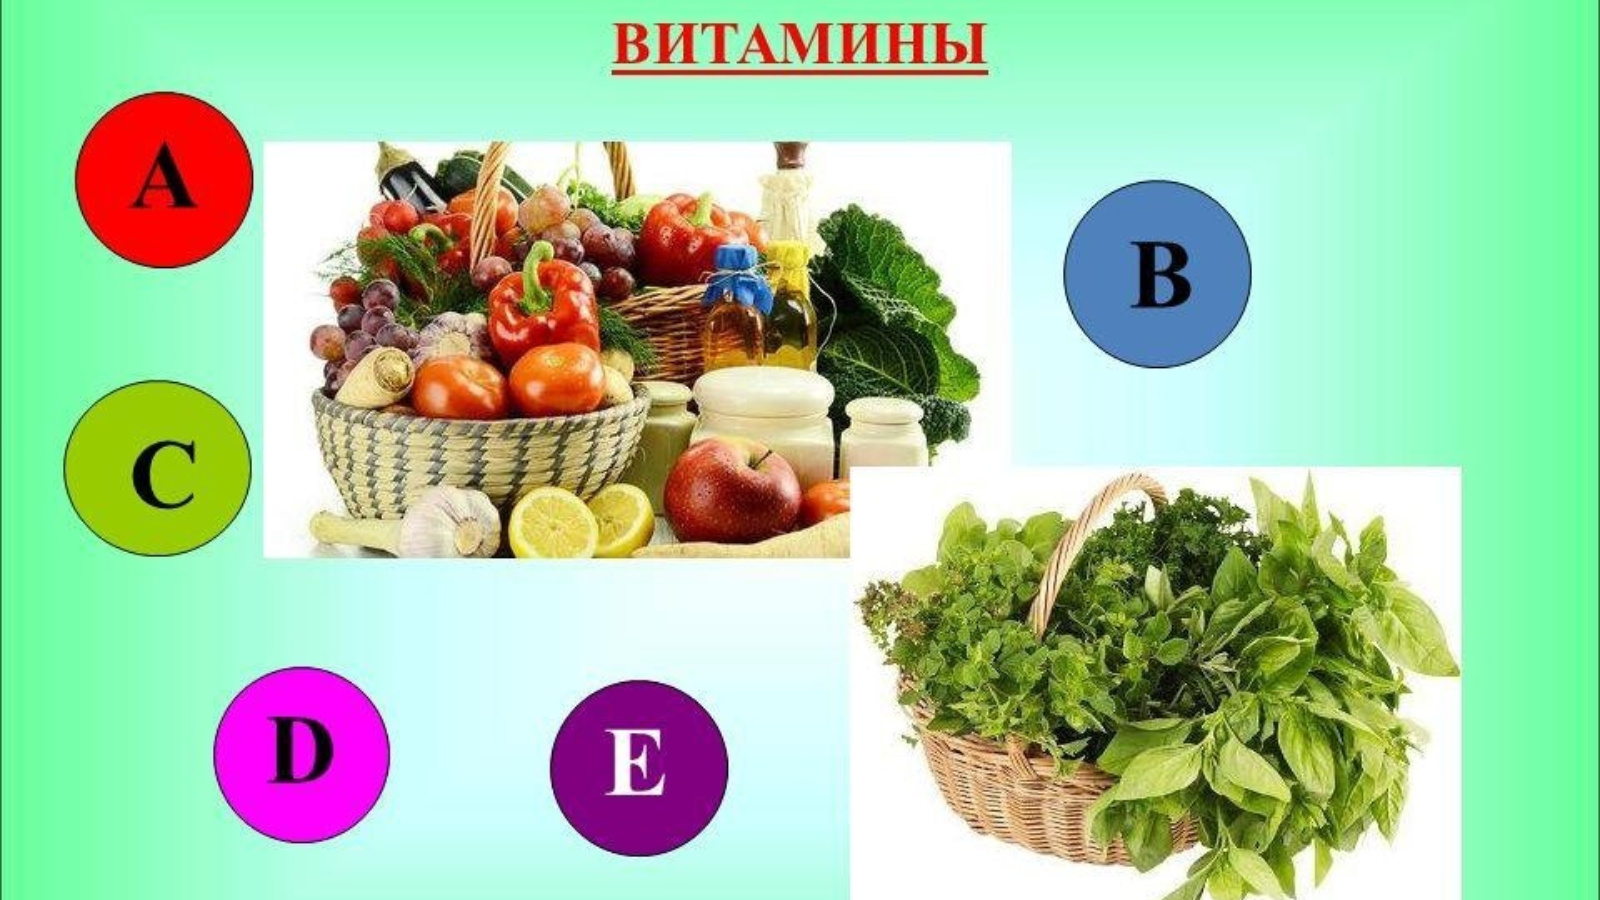 Овощи фрукты и их витамины. Витамины в овощах. Витаминные овощи и фрукты. Витамины в фруктах. Что такое витамины.